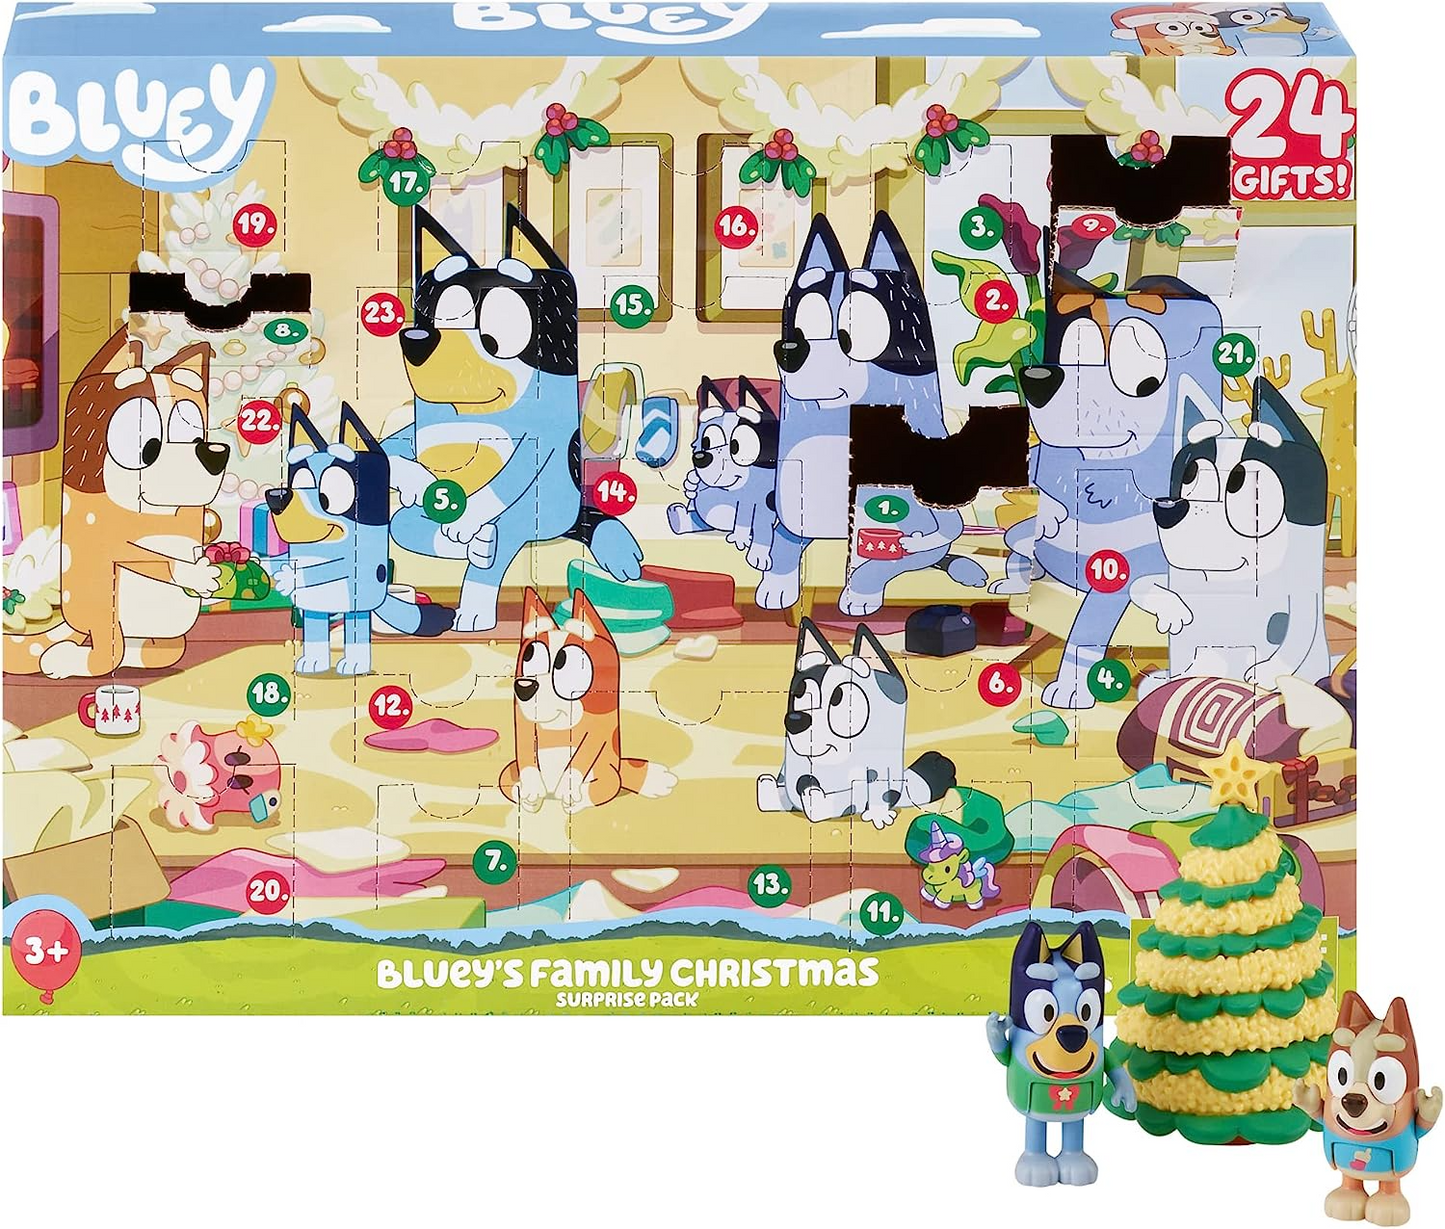 Bluey Pacote surpresa de Natal em família. Abra a embalagem para encontrar uma surpresa todos os dias durante 24 dias!